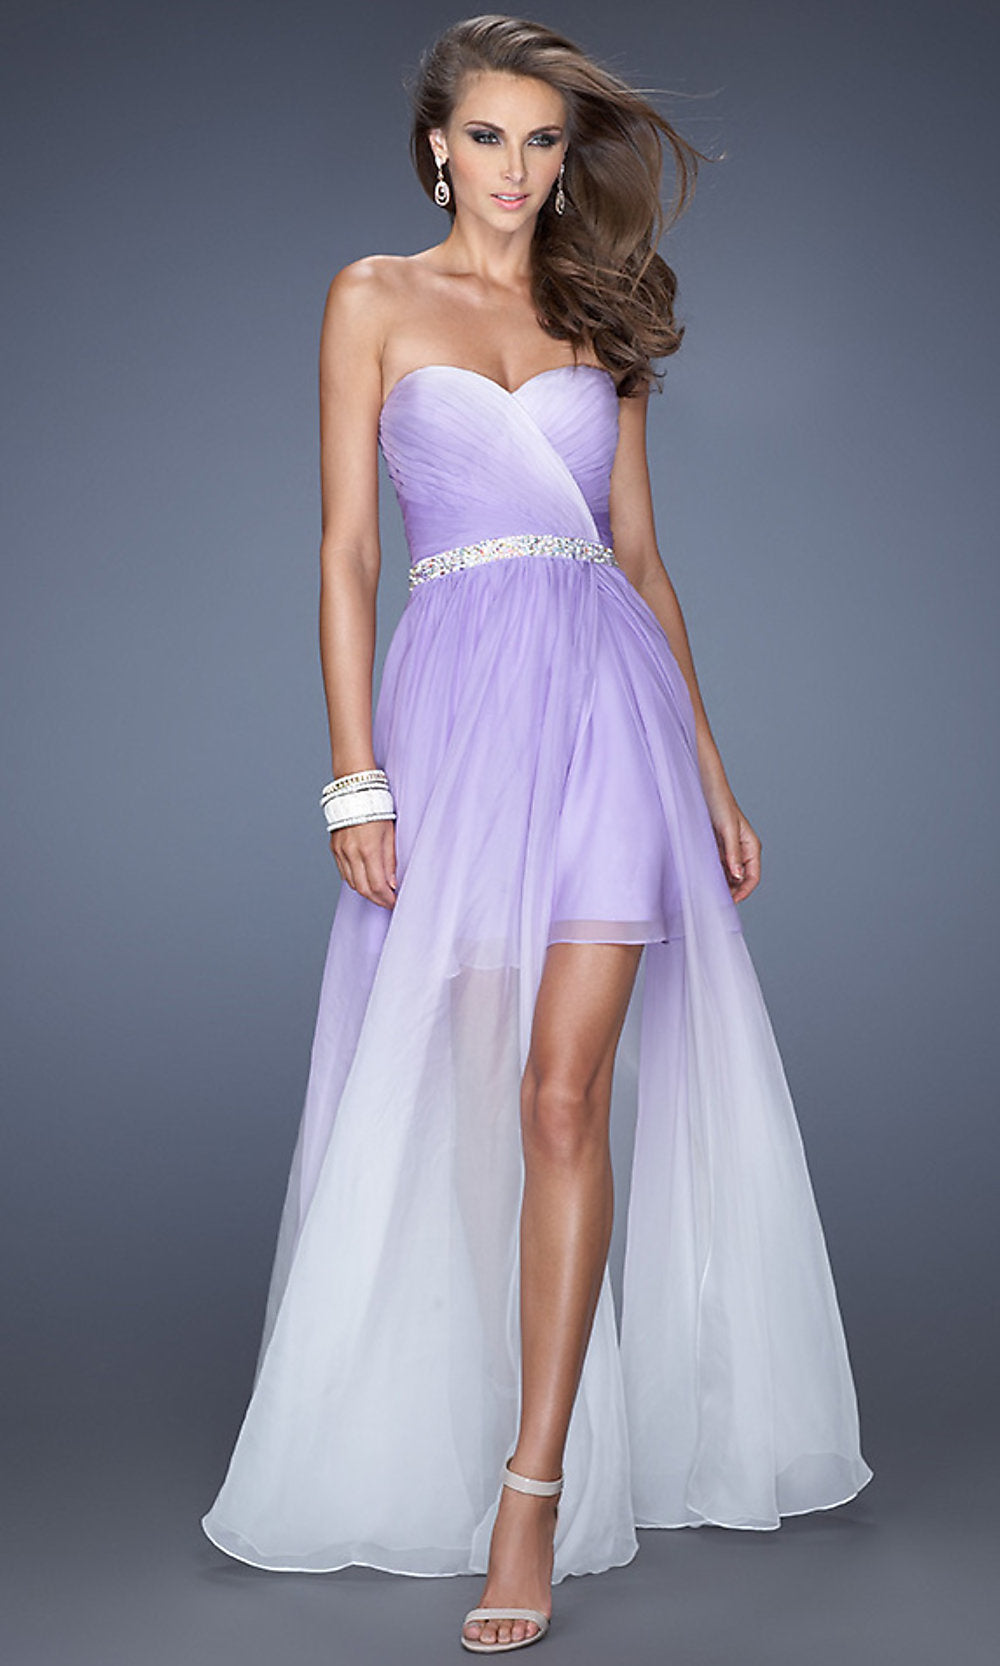 https://www.promgirl.com/cdn/shop/products/wisteria-dress-LF-20028-d.jpg?v=1668725506